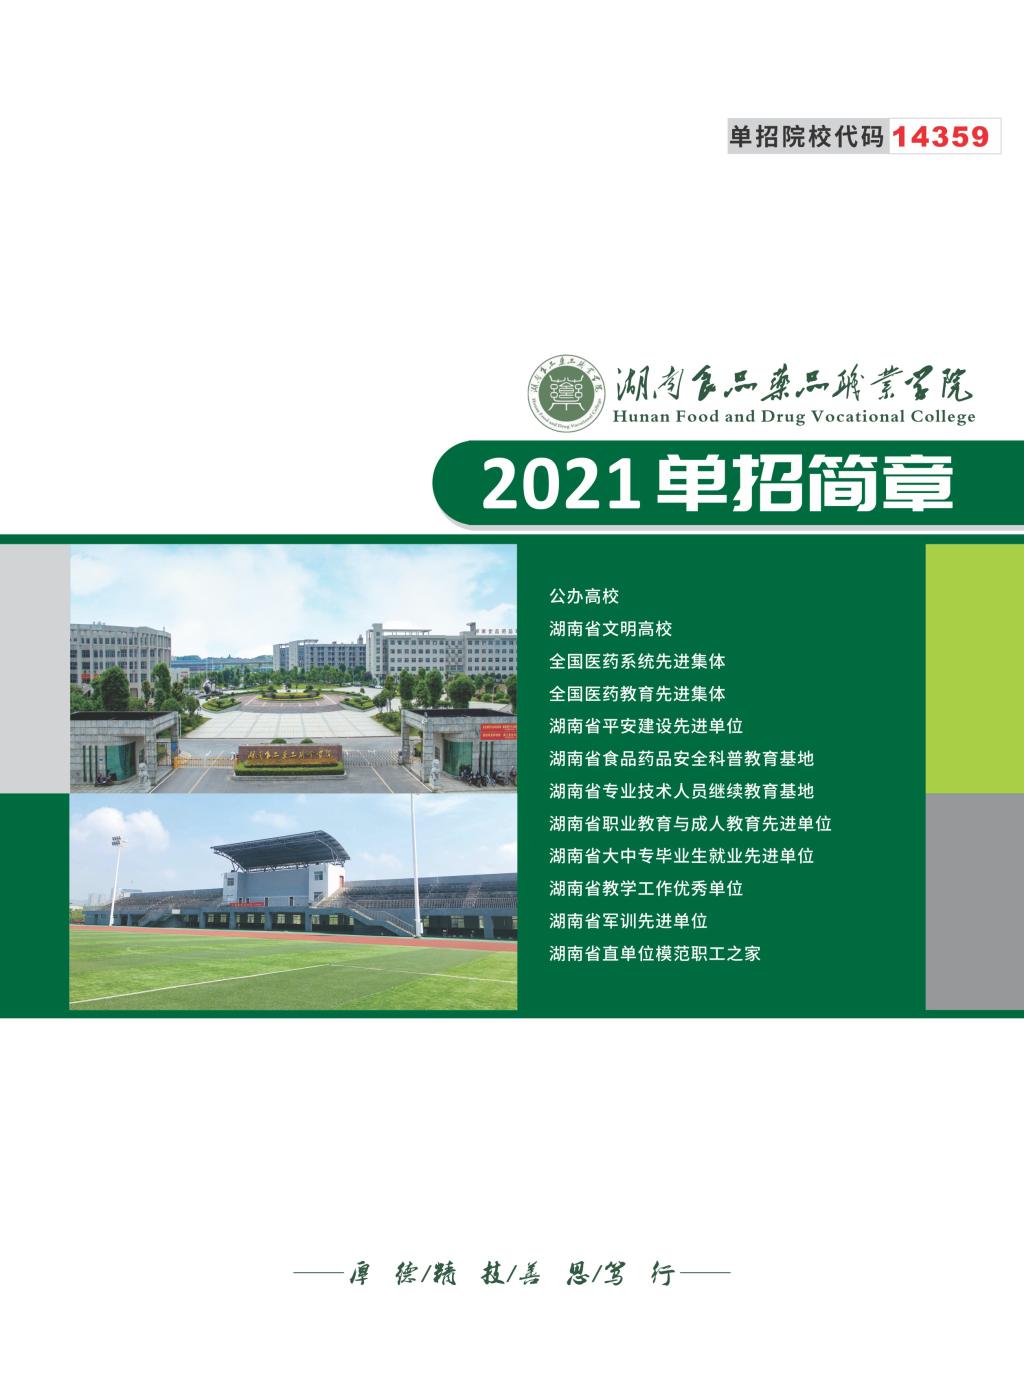 2021年湖南食品药品职业学院单独招生简章